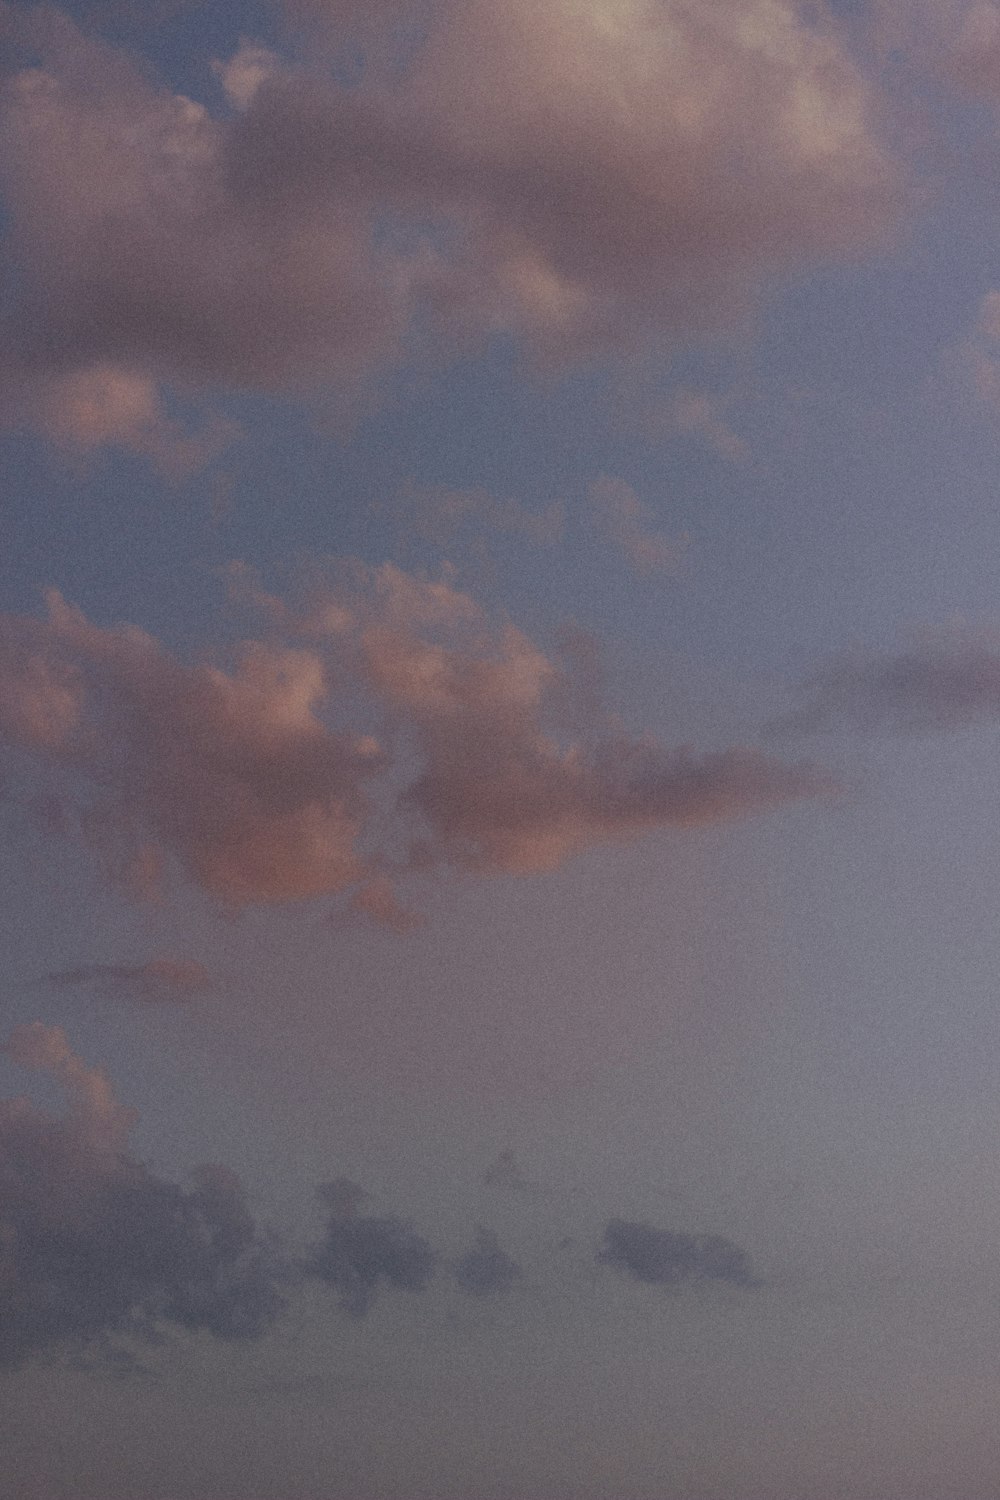 Un avion volant dans le ciel avec des nuages en arrière-plan